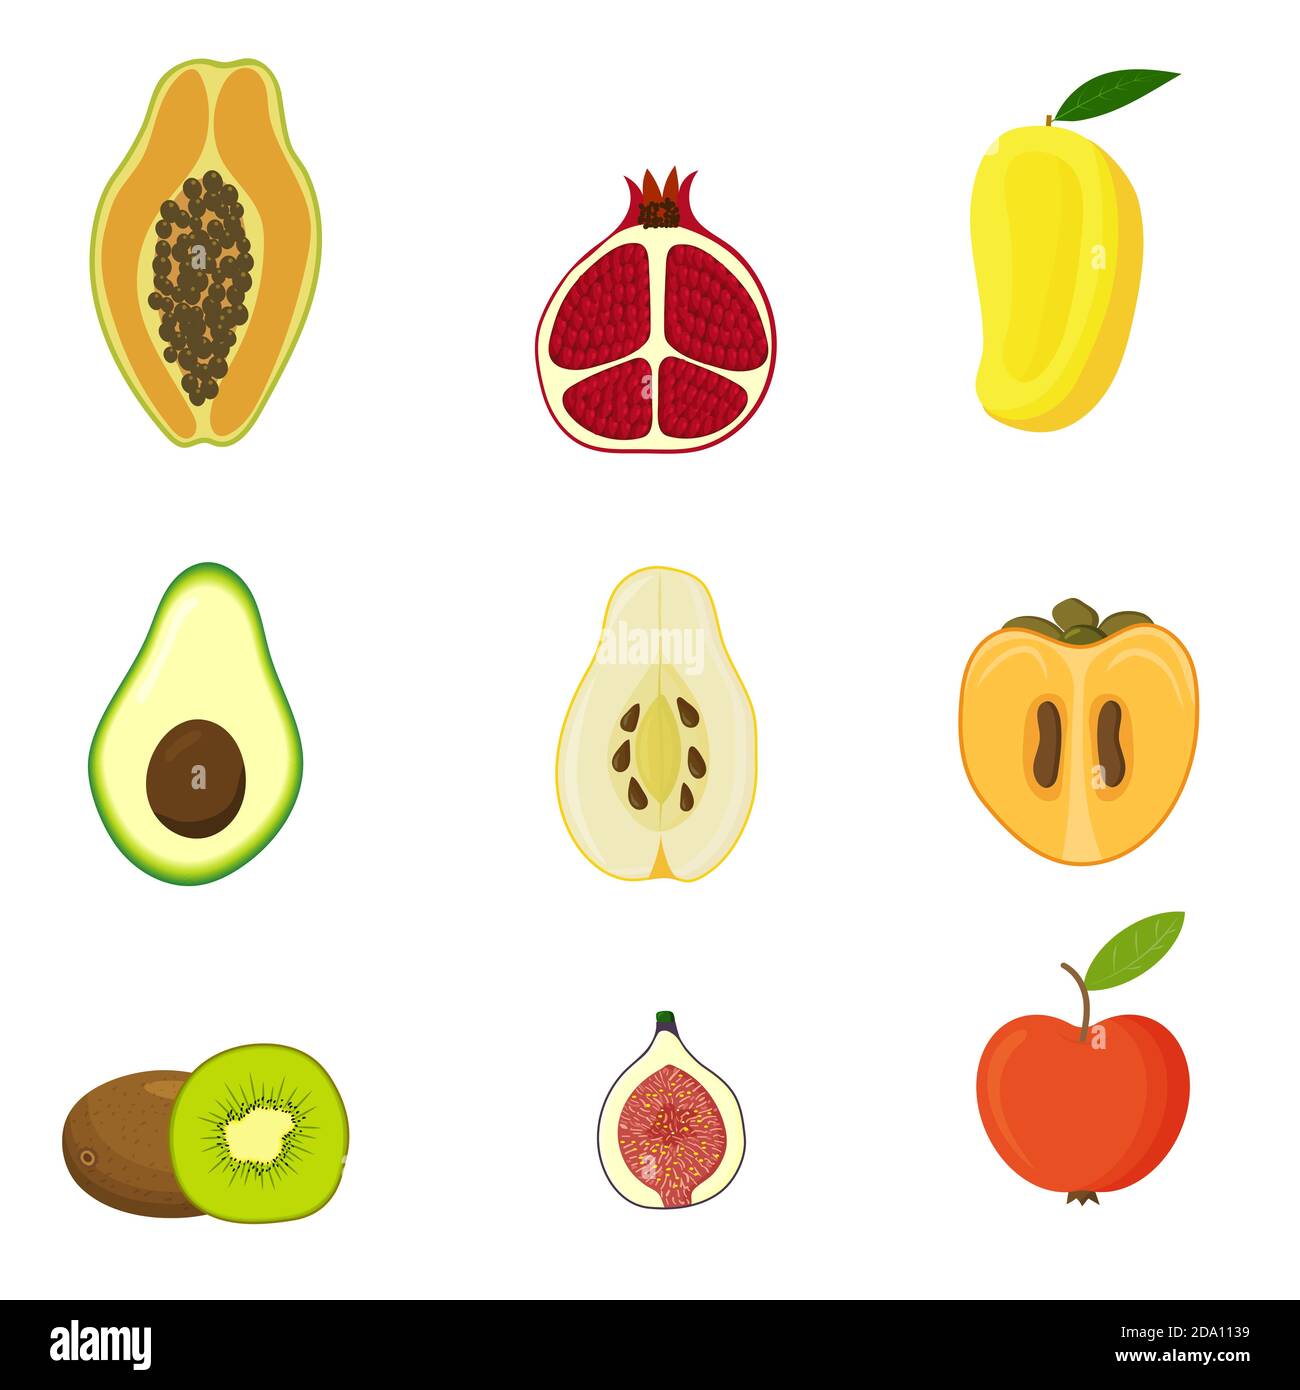 Früchte sind Apfel, Papaya, Mango, Avocado, Granatapfel, Feige, Kiwi, Quitte, Kakimmon. Cute helle Farben der Früchte Vektor-Kollektionen, flach Stock Vektor